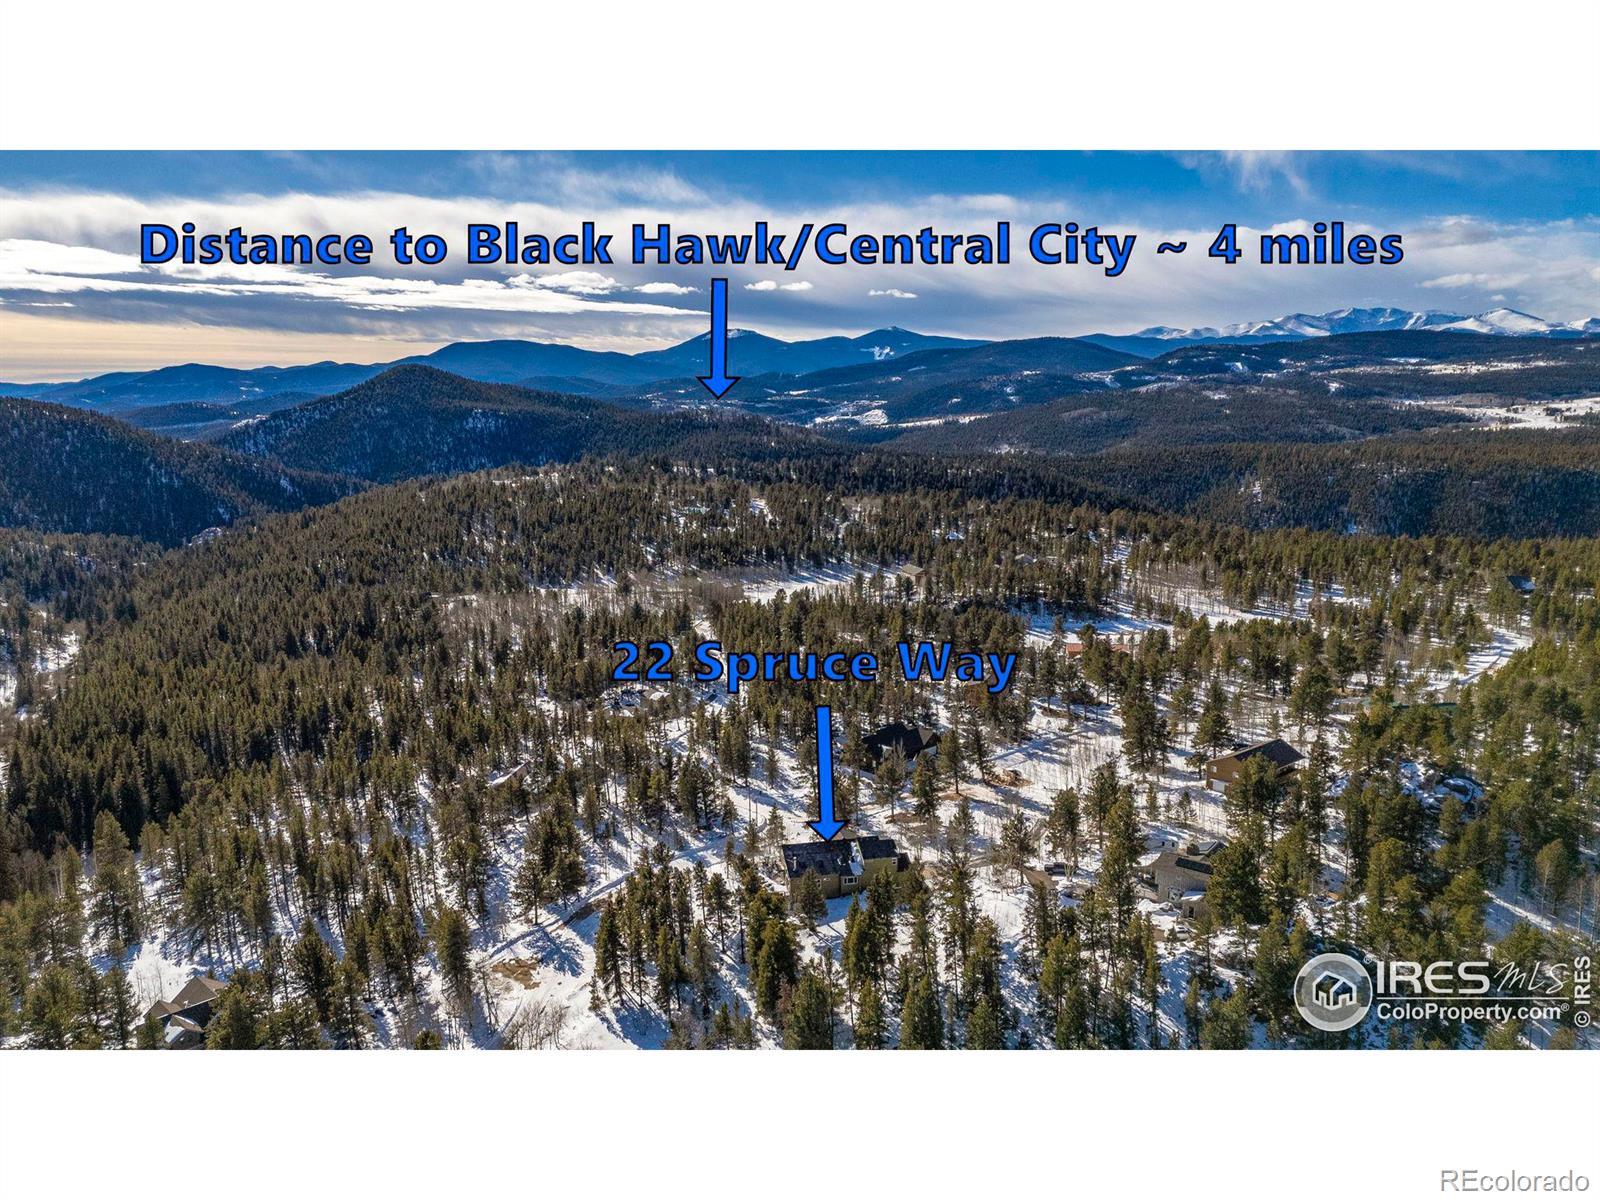 MLS Image #38 for 22  spruce way,black hawk, Colorado